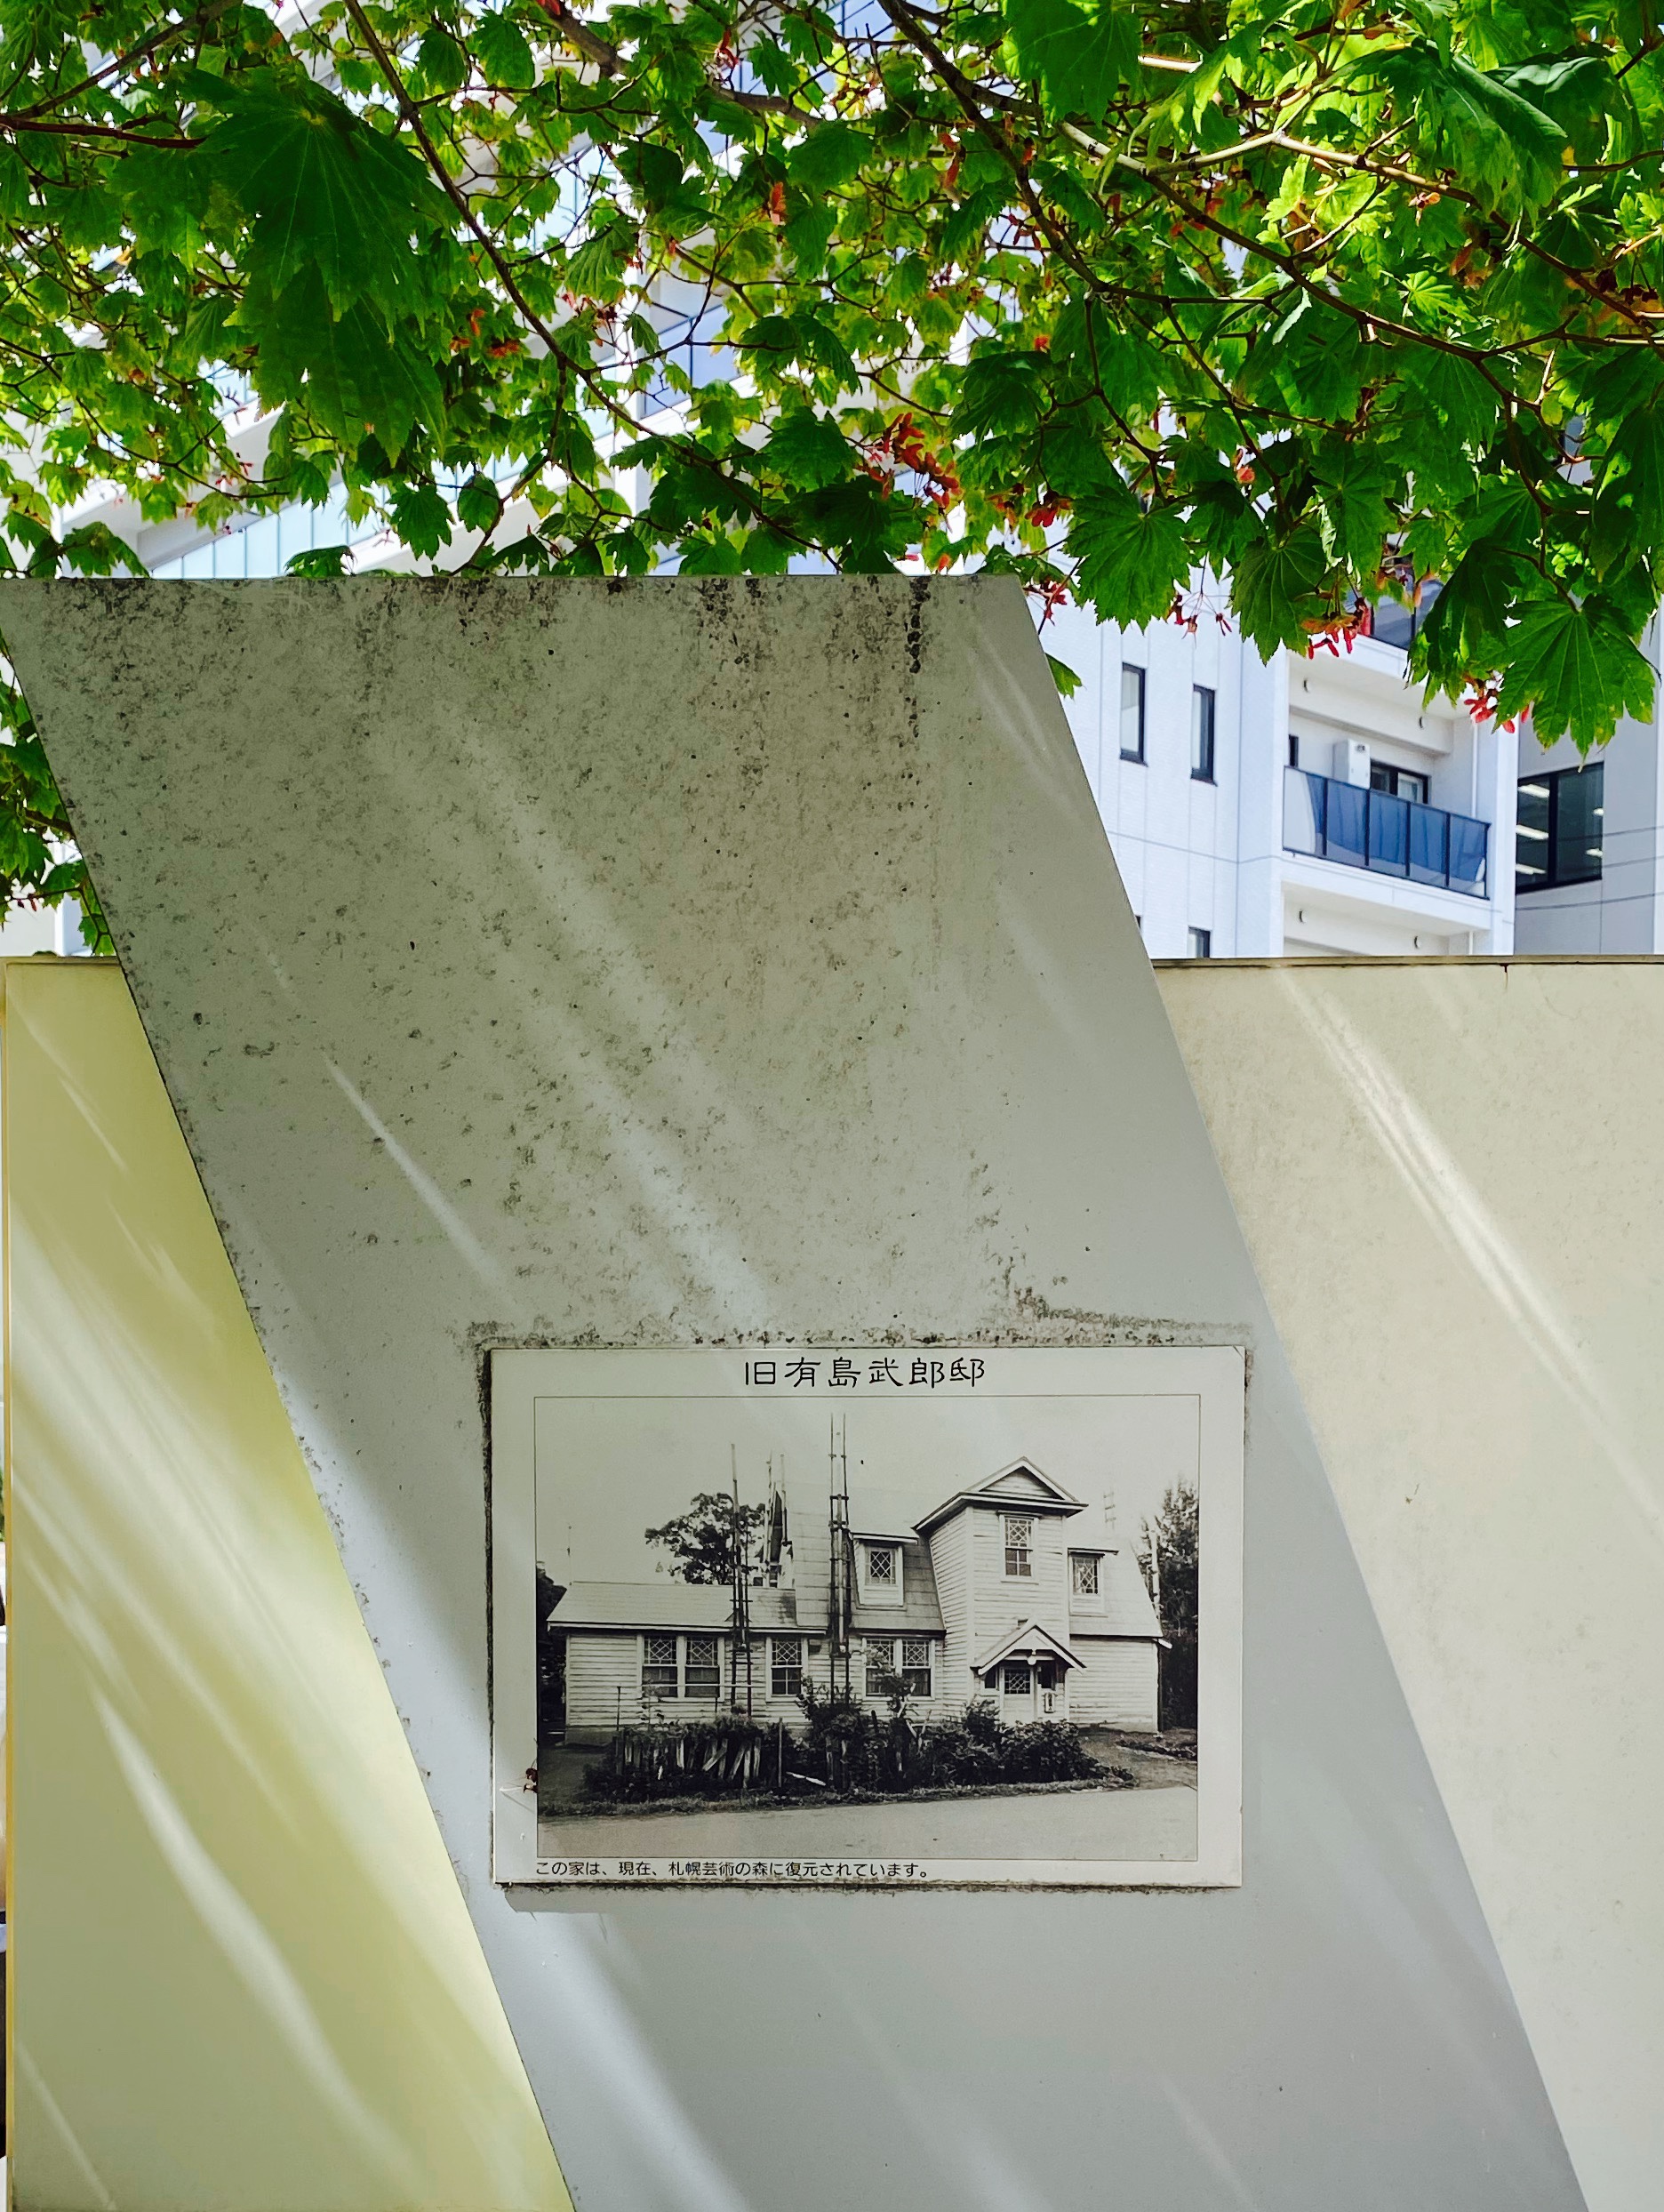 「北区歴史と文化の八十八選」案内図の裏面に、当時の有島武郎邸の写真が飾られている